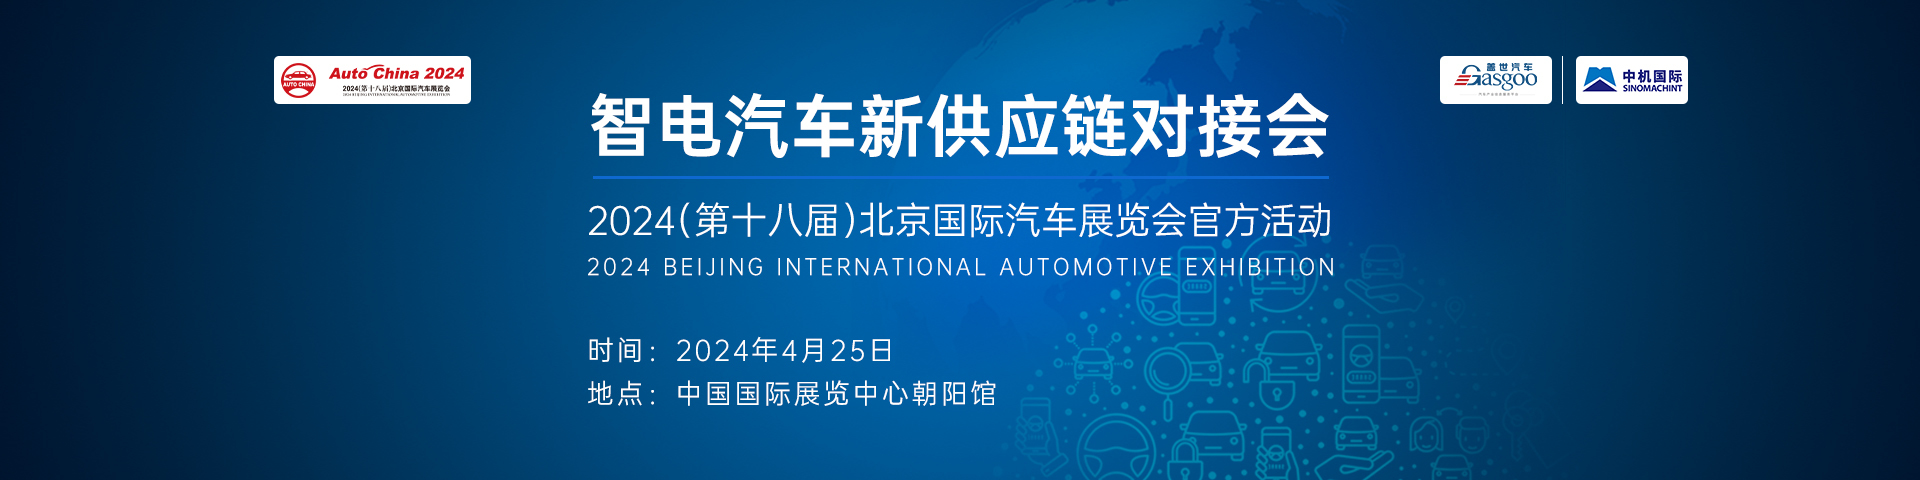 智电汽车新供应链对接会  2024（第十八届）北京国际汽车展览会官方活动